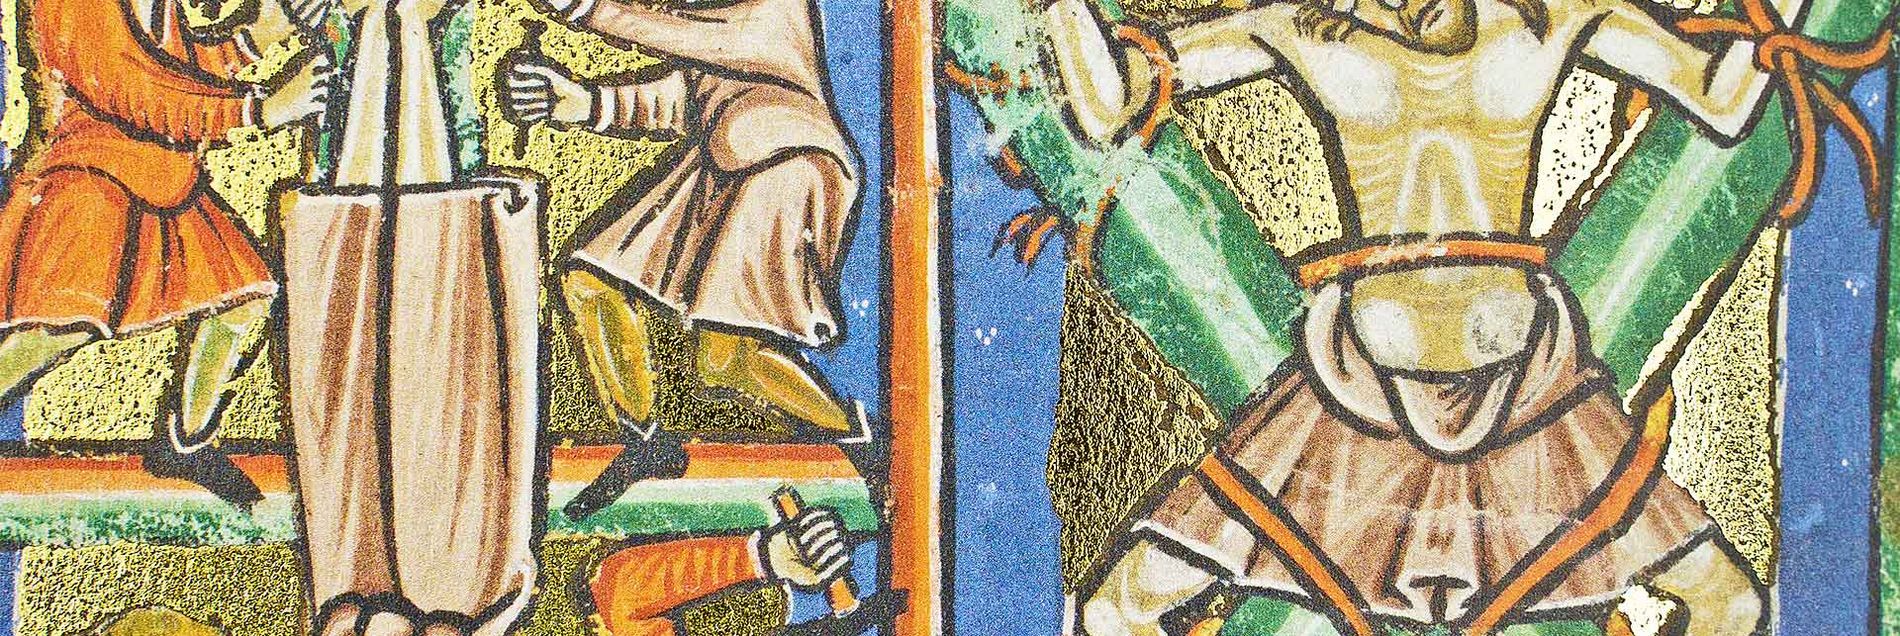 <i>“Miniaturen auf poliertem Goldhintergrund, aber mit ausdrücklicher Kritik an den Kreuzzügen”</i>